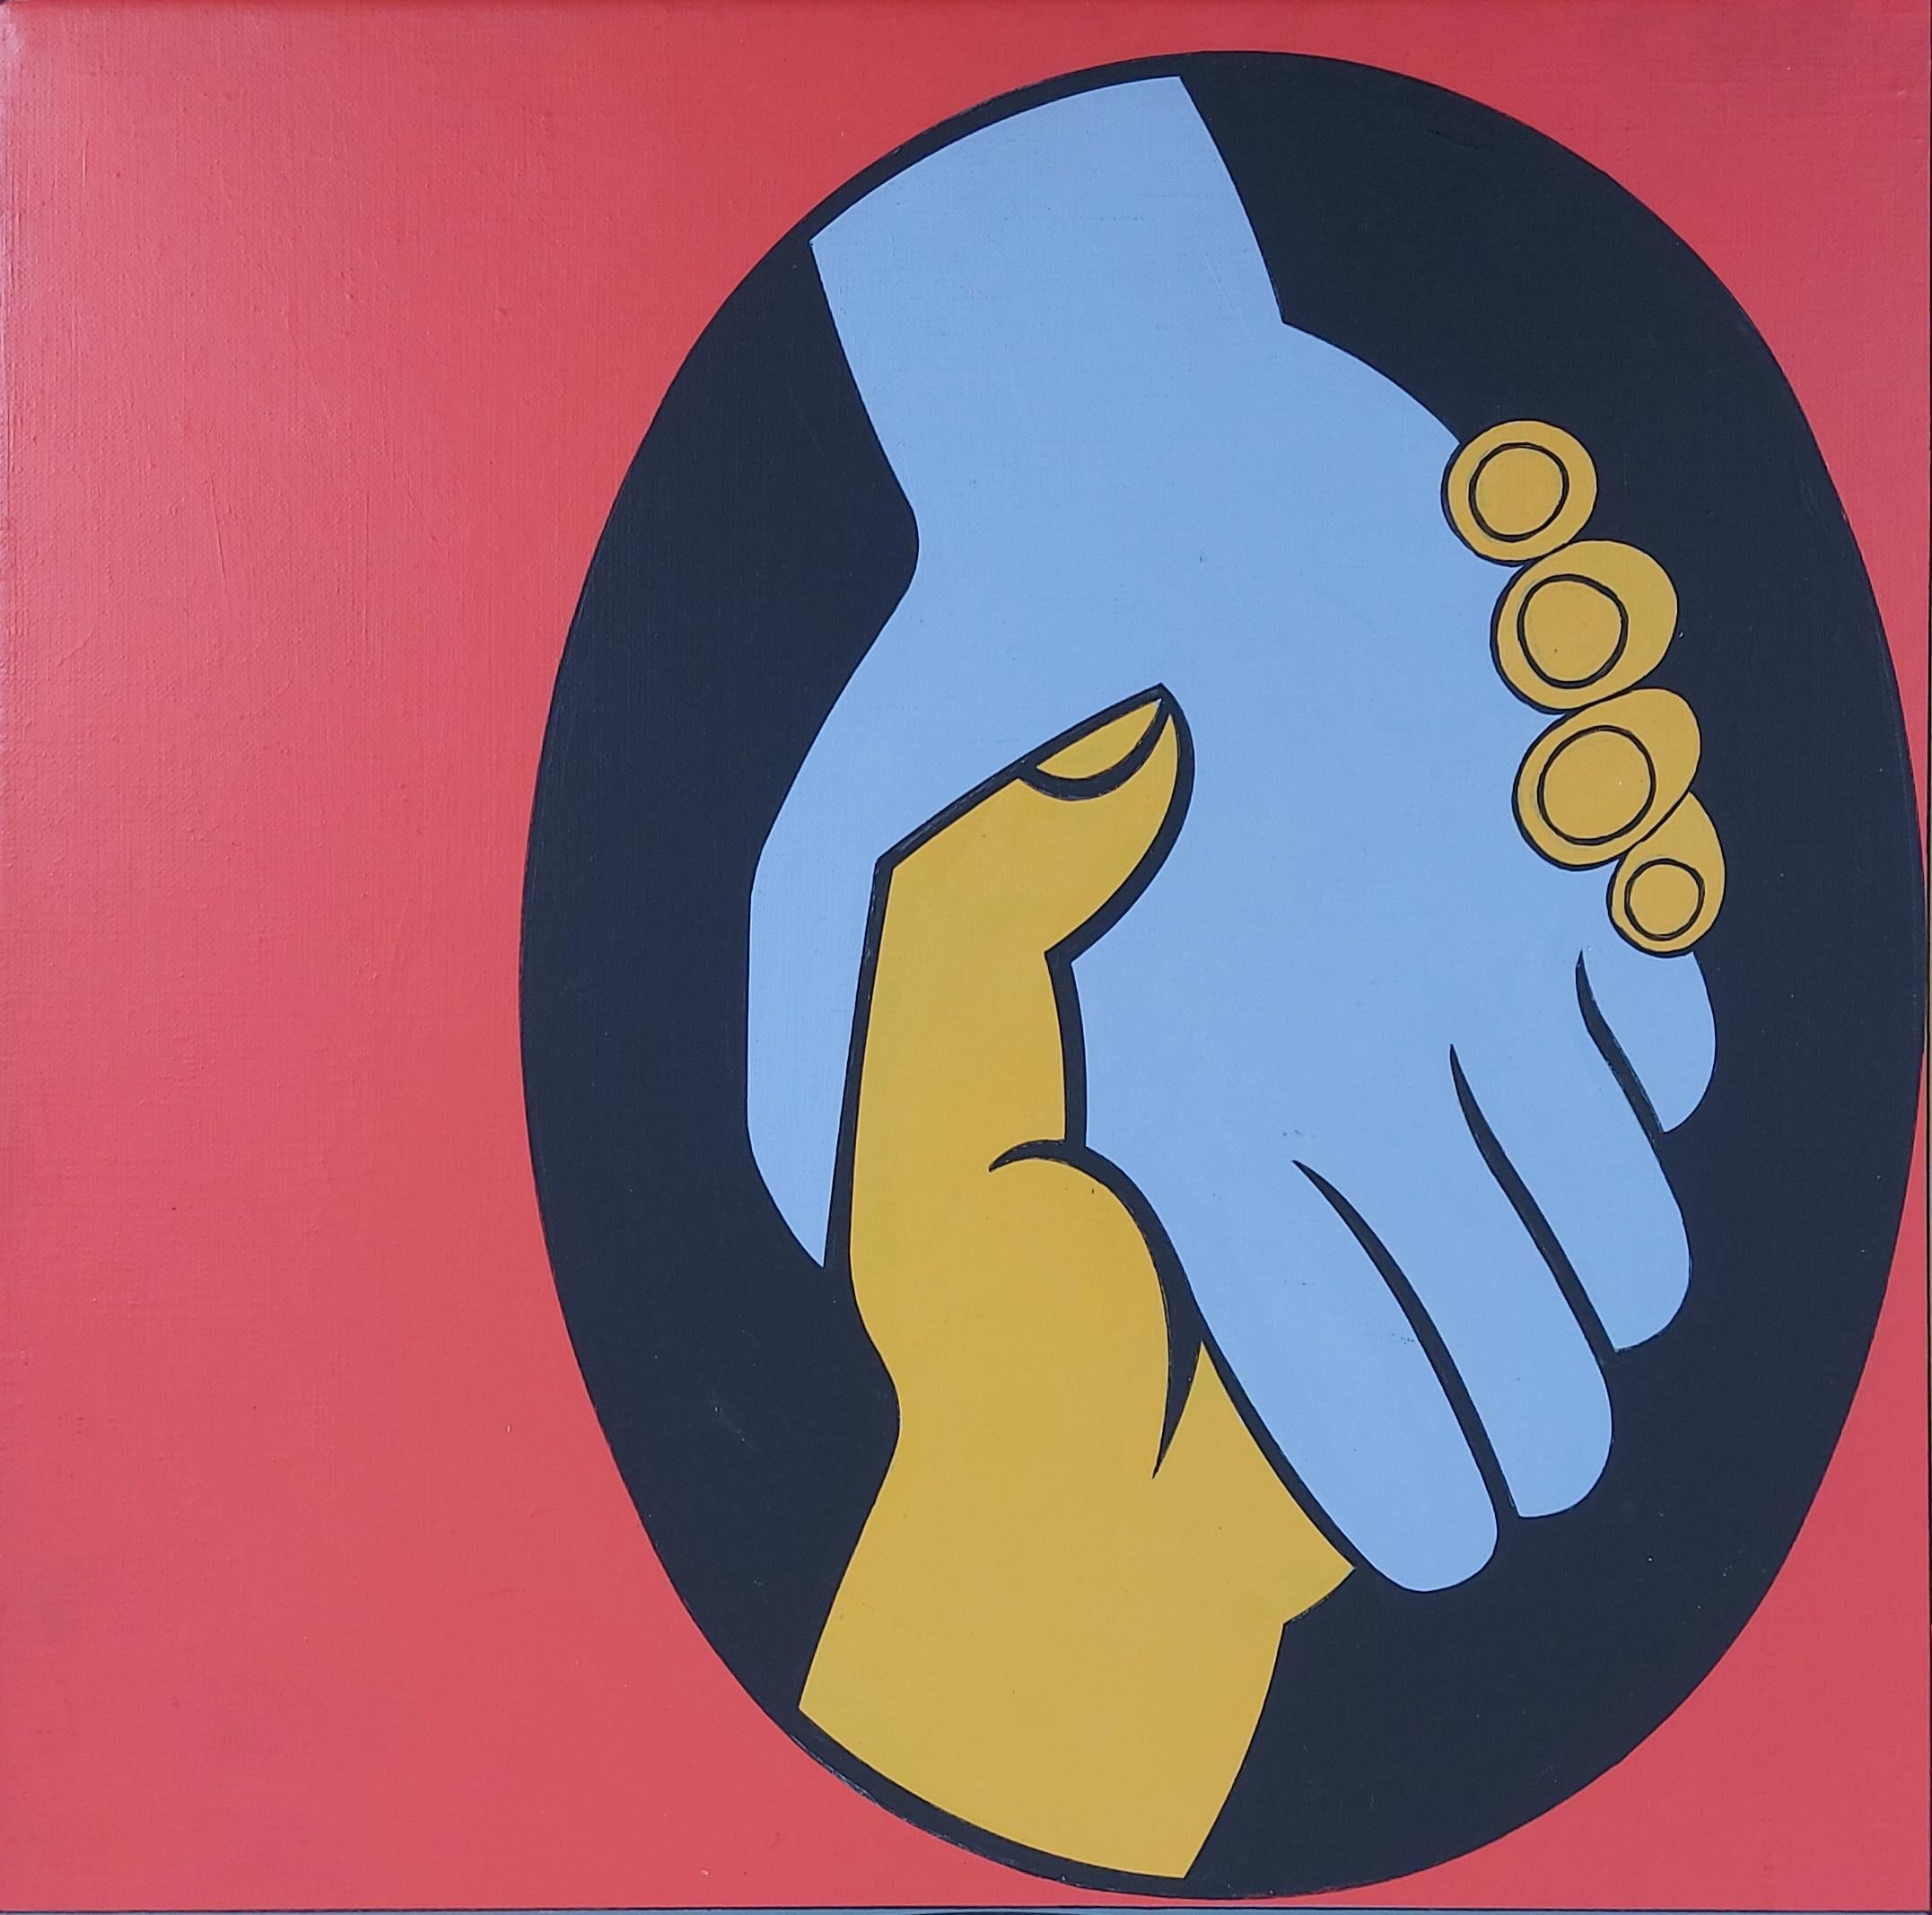 Victor VASARELY
Amitié mondiale (Fay Koez), 1980

Peinture à l'acrylique originale
Signé en bas au milieu
Signé, titré, daté et énuméré au dos.
Sur toile 60 x 60 cm (c. 24 x 24 inch)
Présentée dans un cadre en bois doré 75 x 75 cm (c. 30 x 30